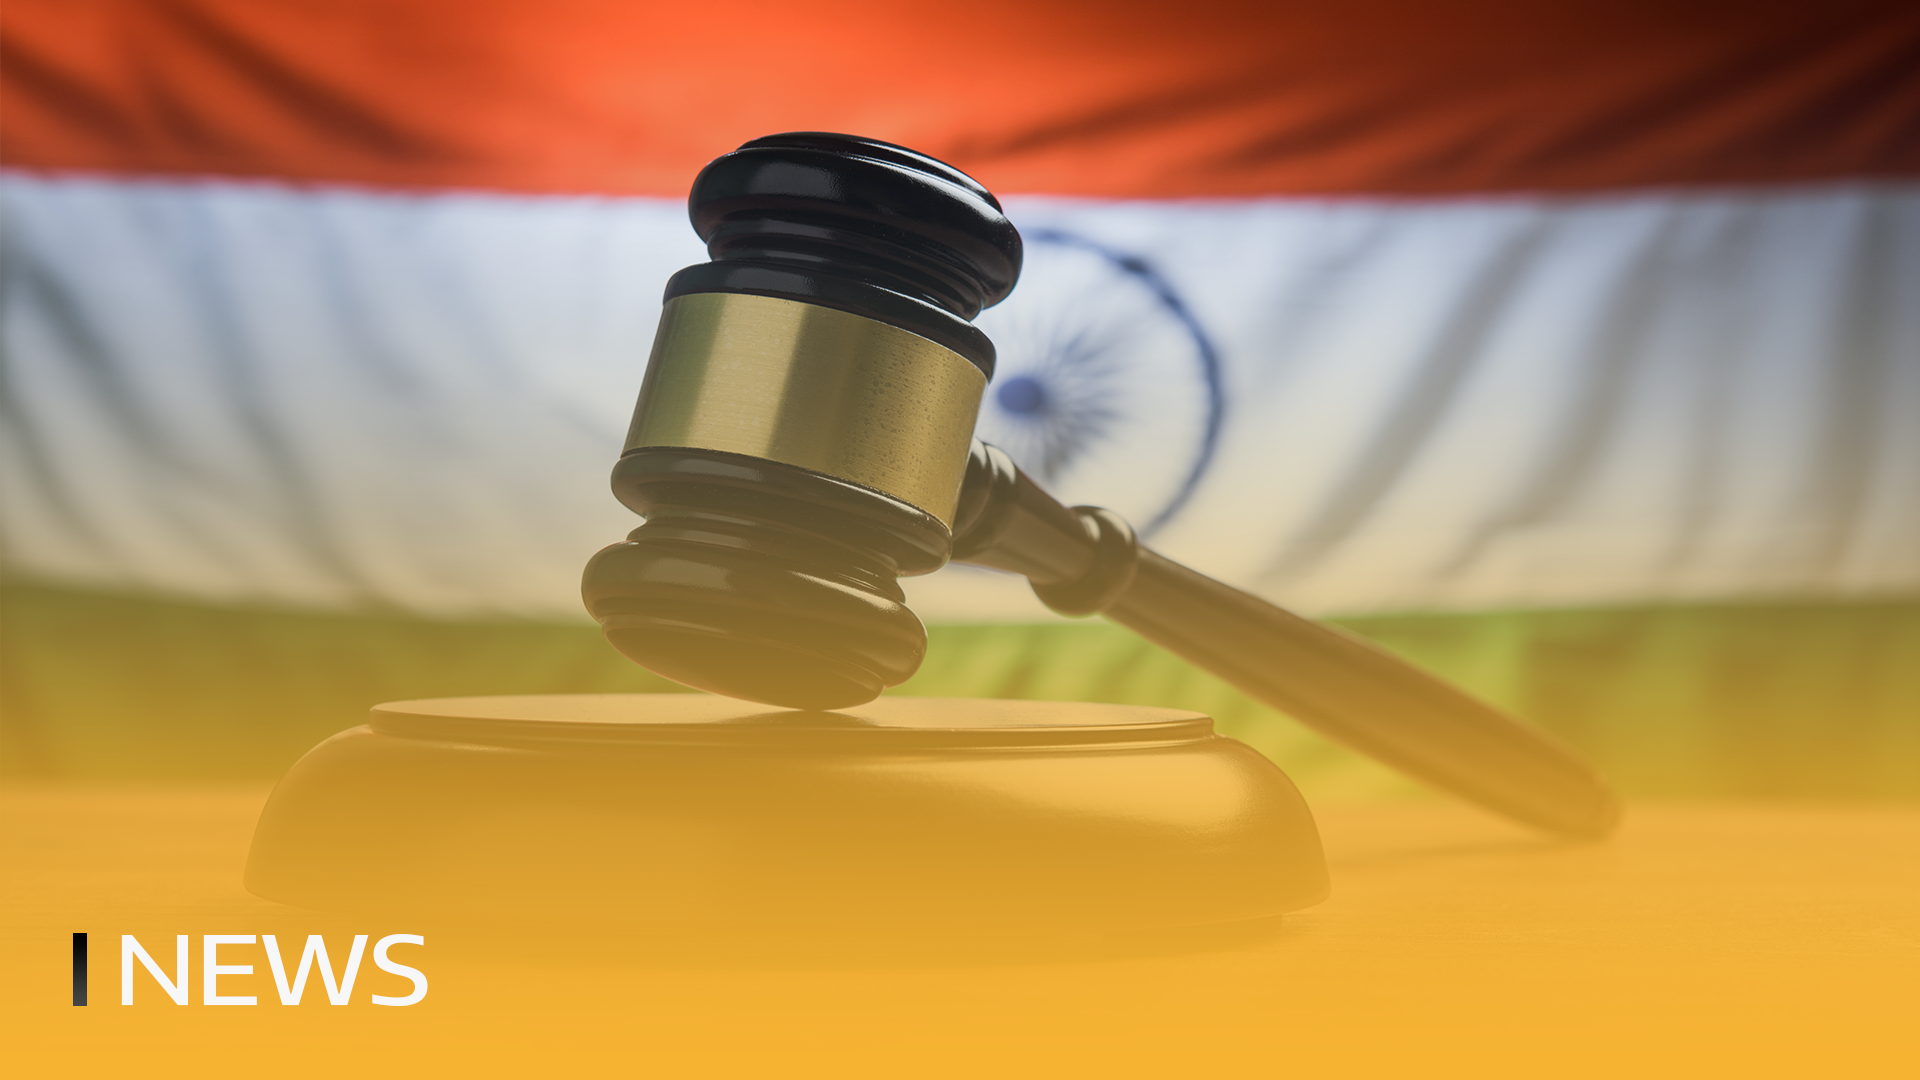 Indien kann Binance wegen illegalen Betriebs blockieren